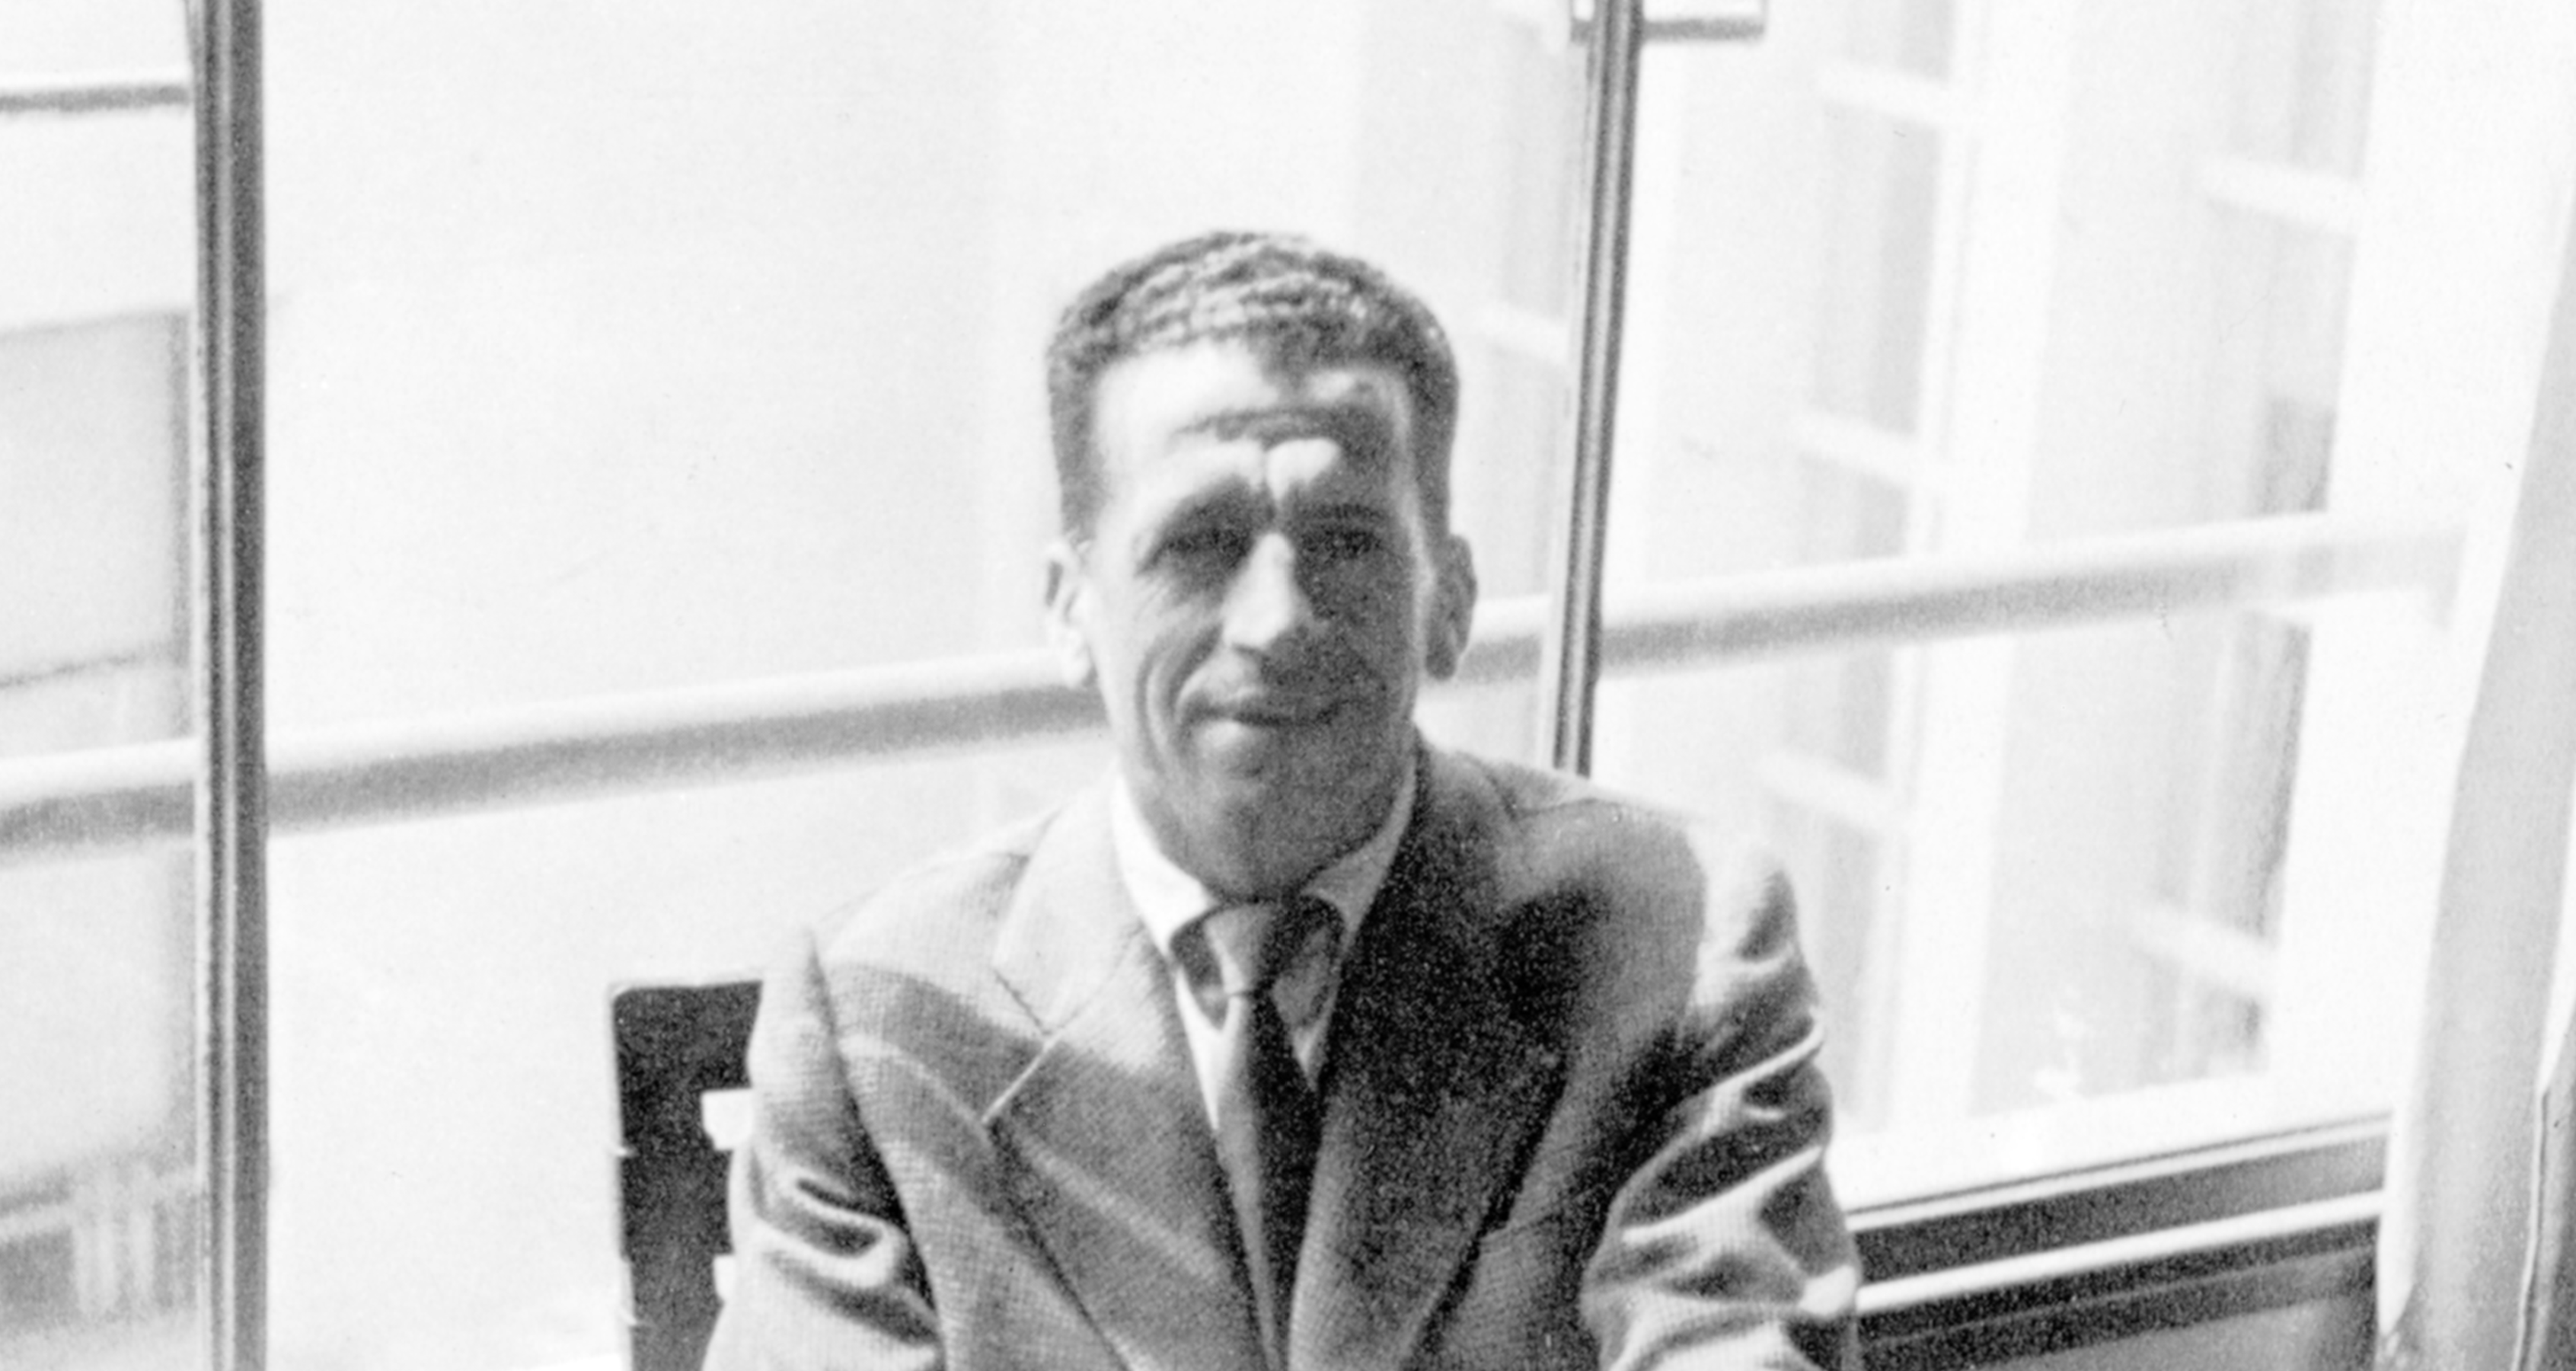 Francisco Rebolo in the studio of the Santa Helena building, 1938 - Rebolo Institute